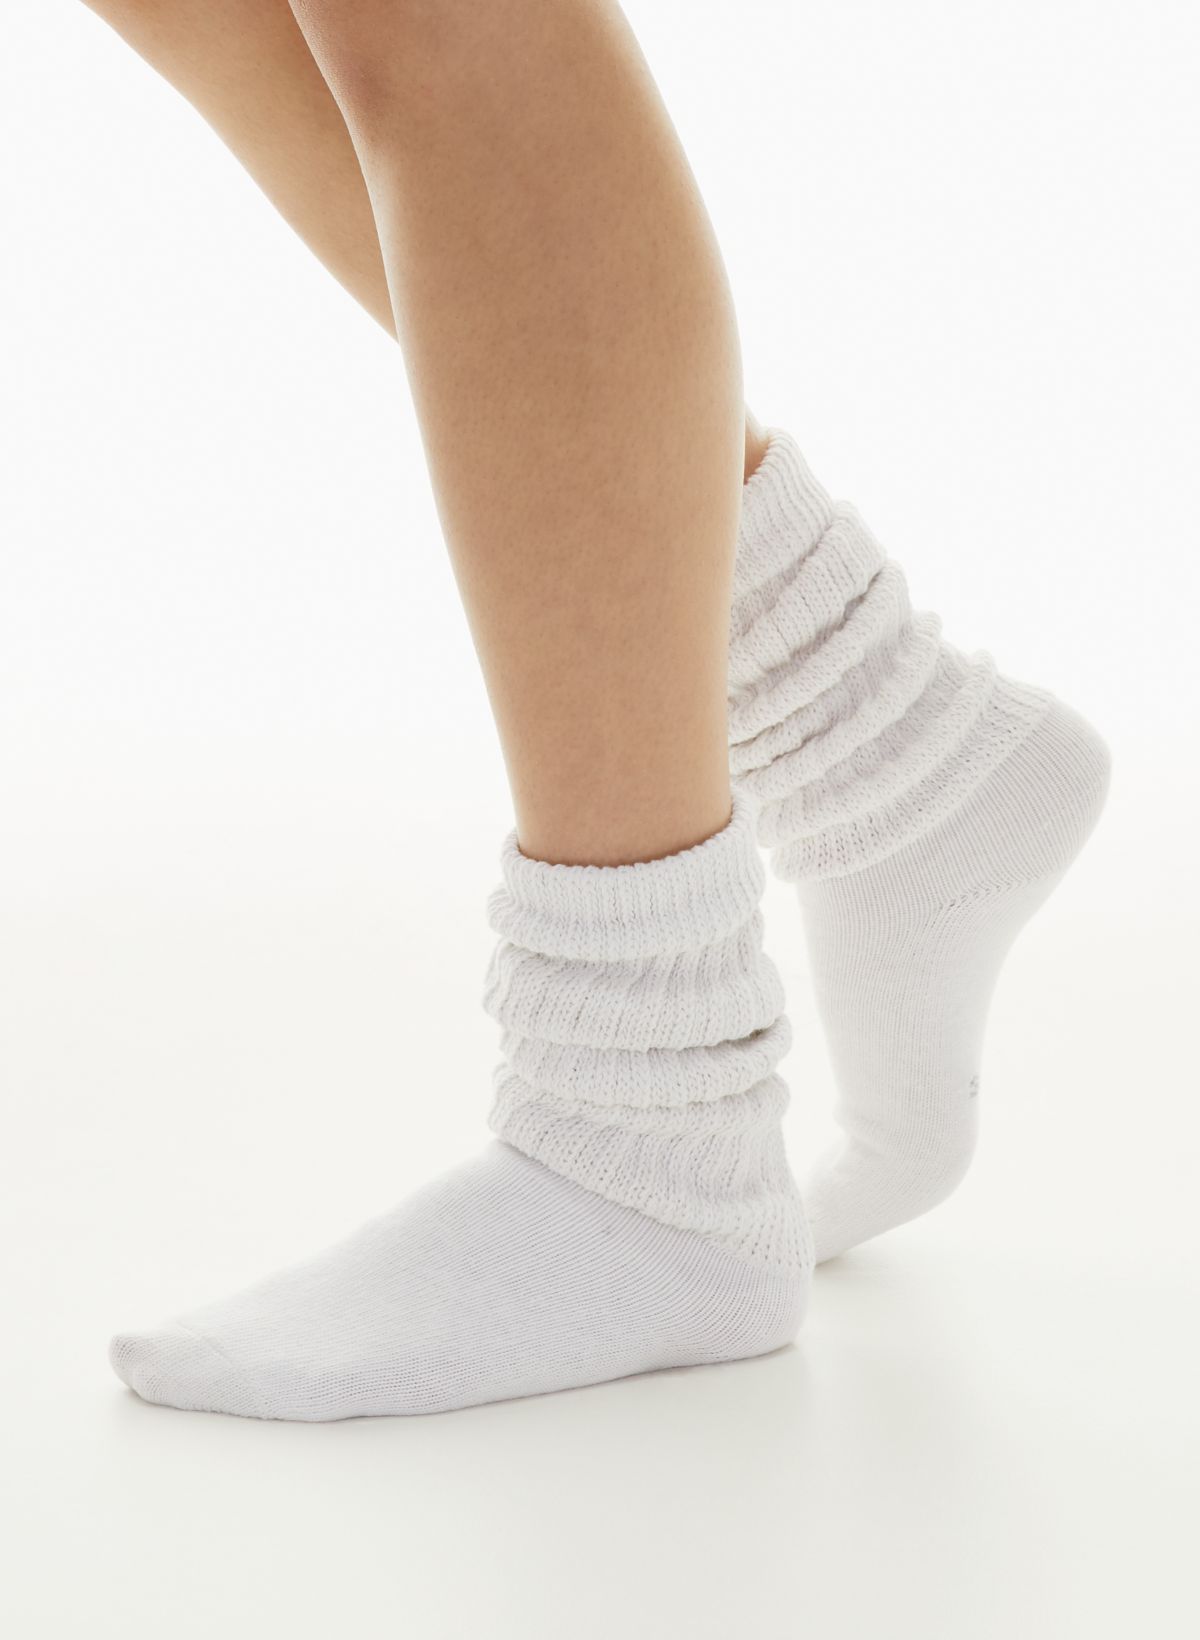 Women's Socks  Crew Socks, Knee Highs & Ankle Socks - Cute But Crazy Socks